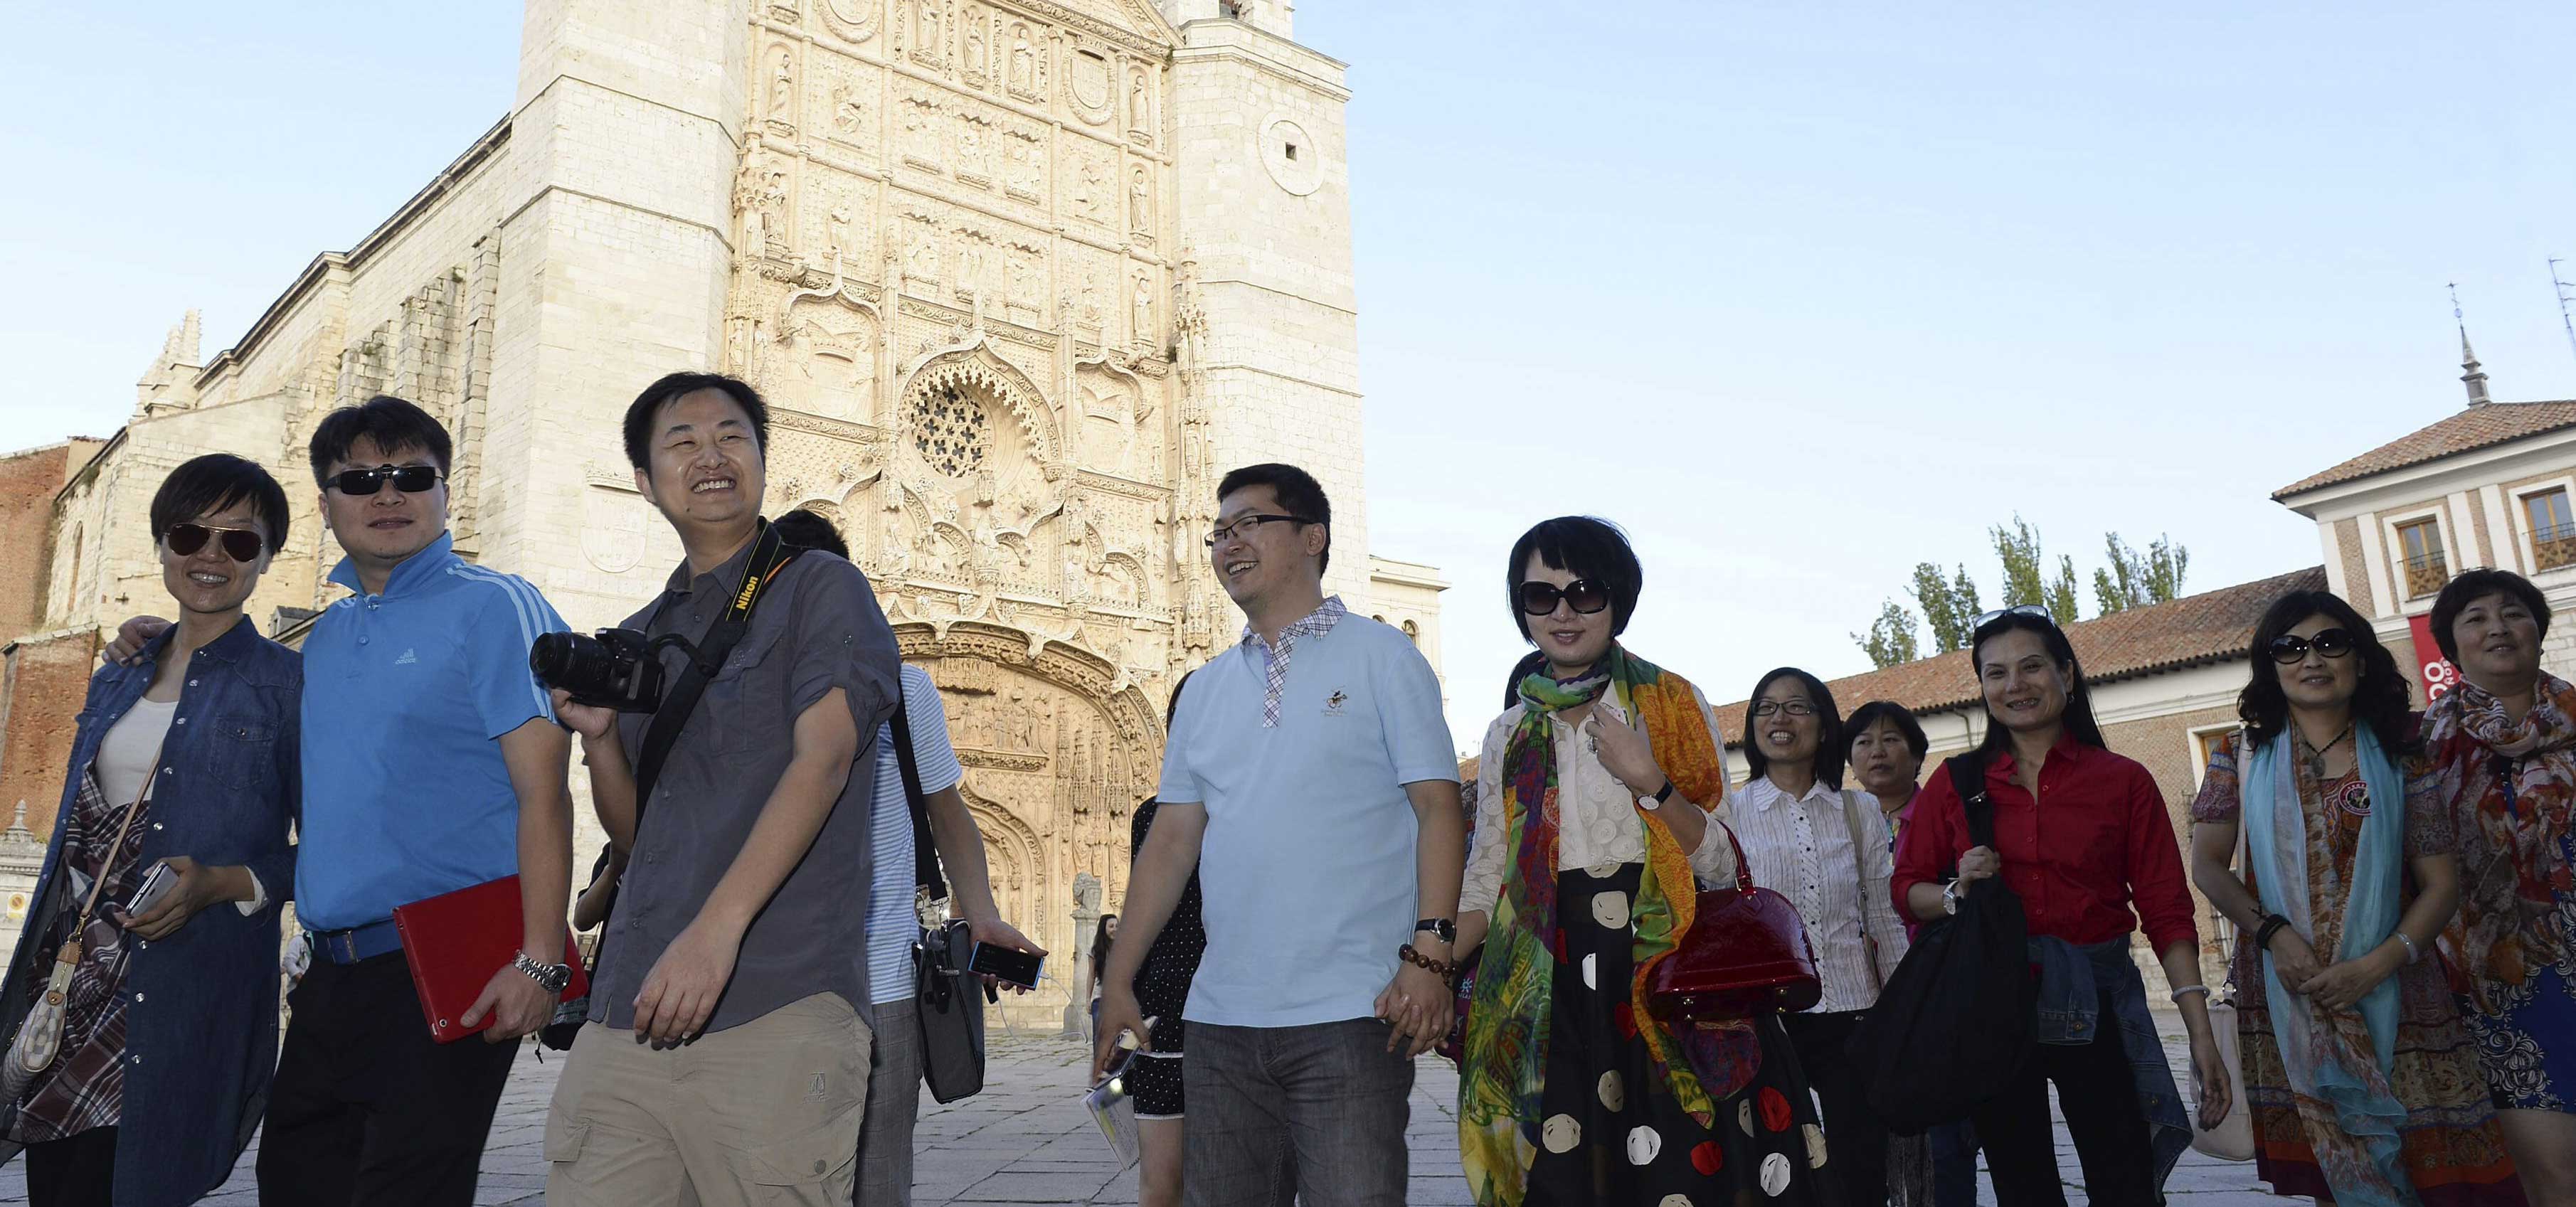 Un grupo de turistas chinos pasean por la Plaza de San Pablo de Valladolid.